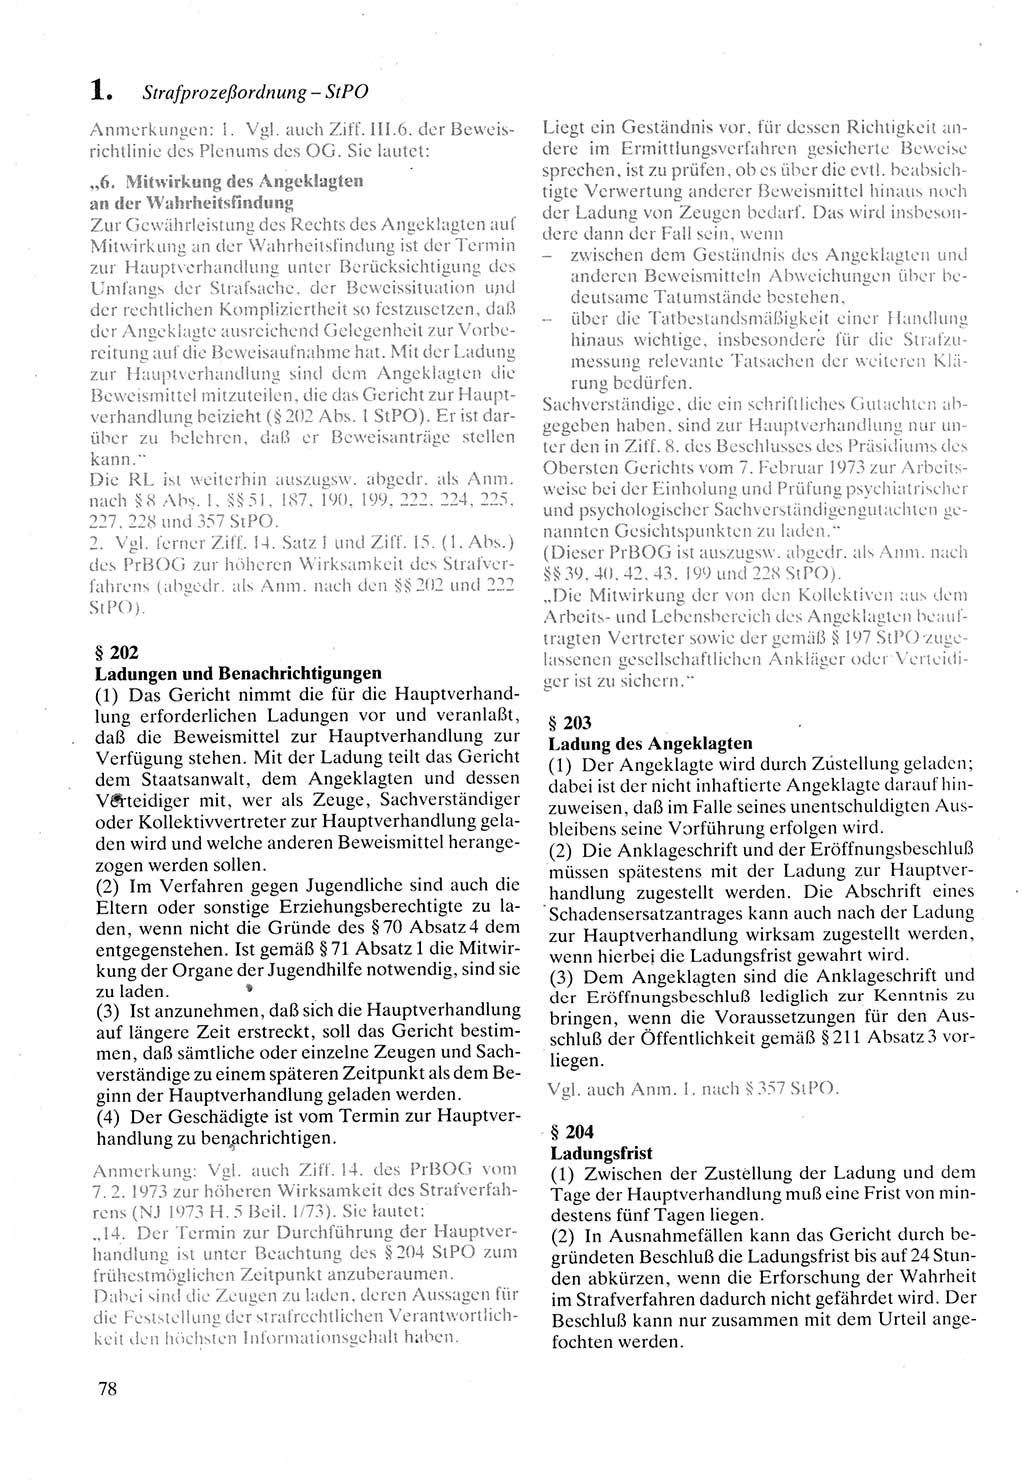 Strafprozeßordnung (StPO) der Deutschen Demokratischen Republik (DDR) sowie angrenzende Gesetze und Bestimmungen 1987, Seite 78 (StPO DDR Ges. Best. 1987, S. 78)